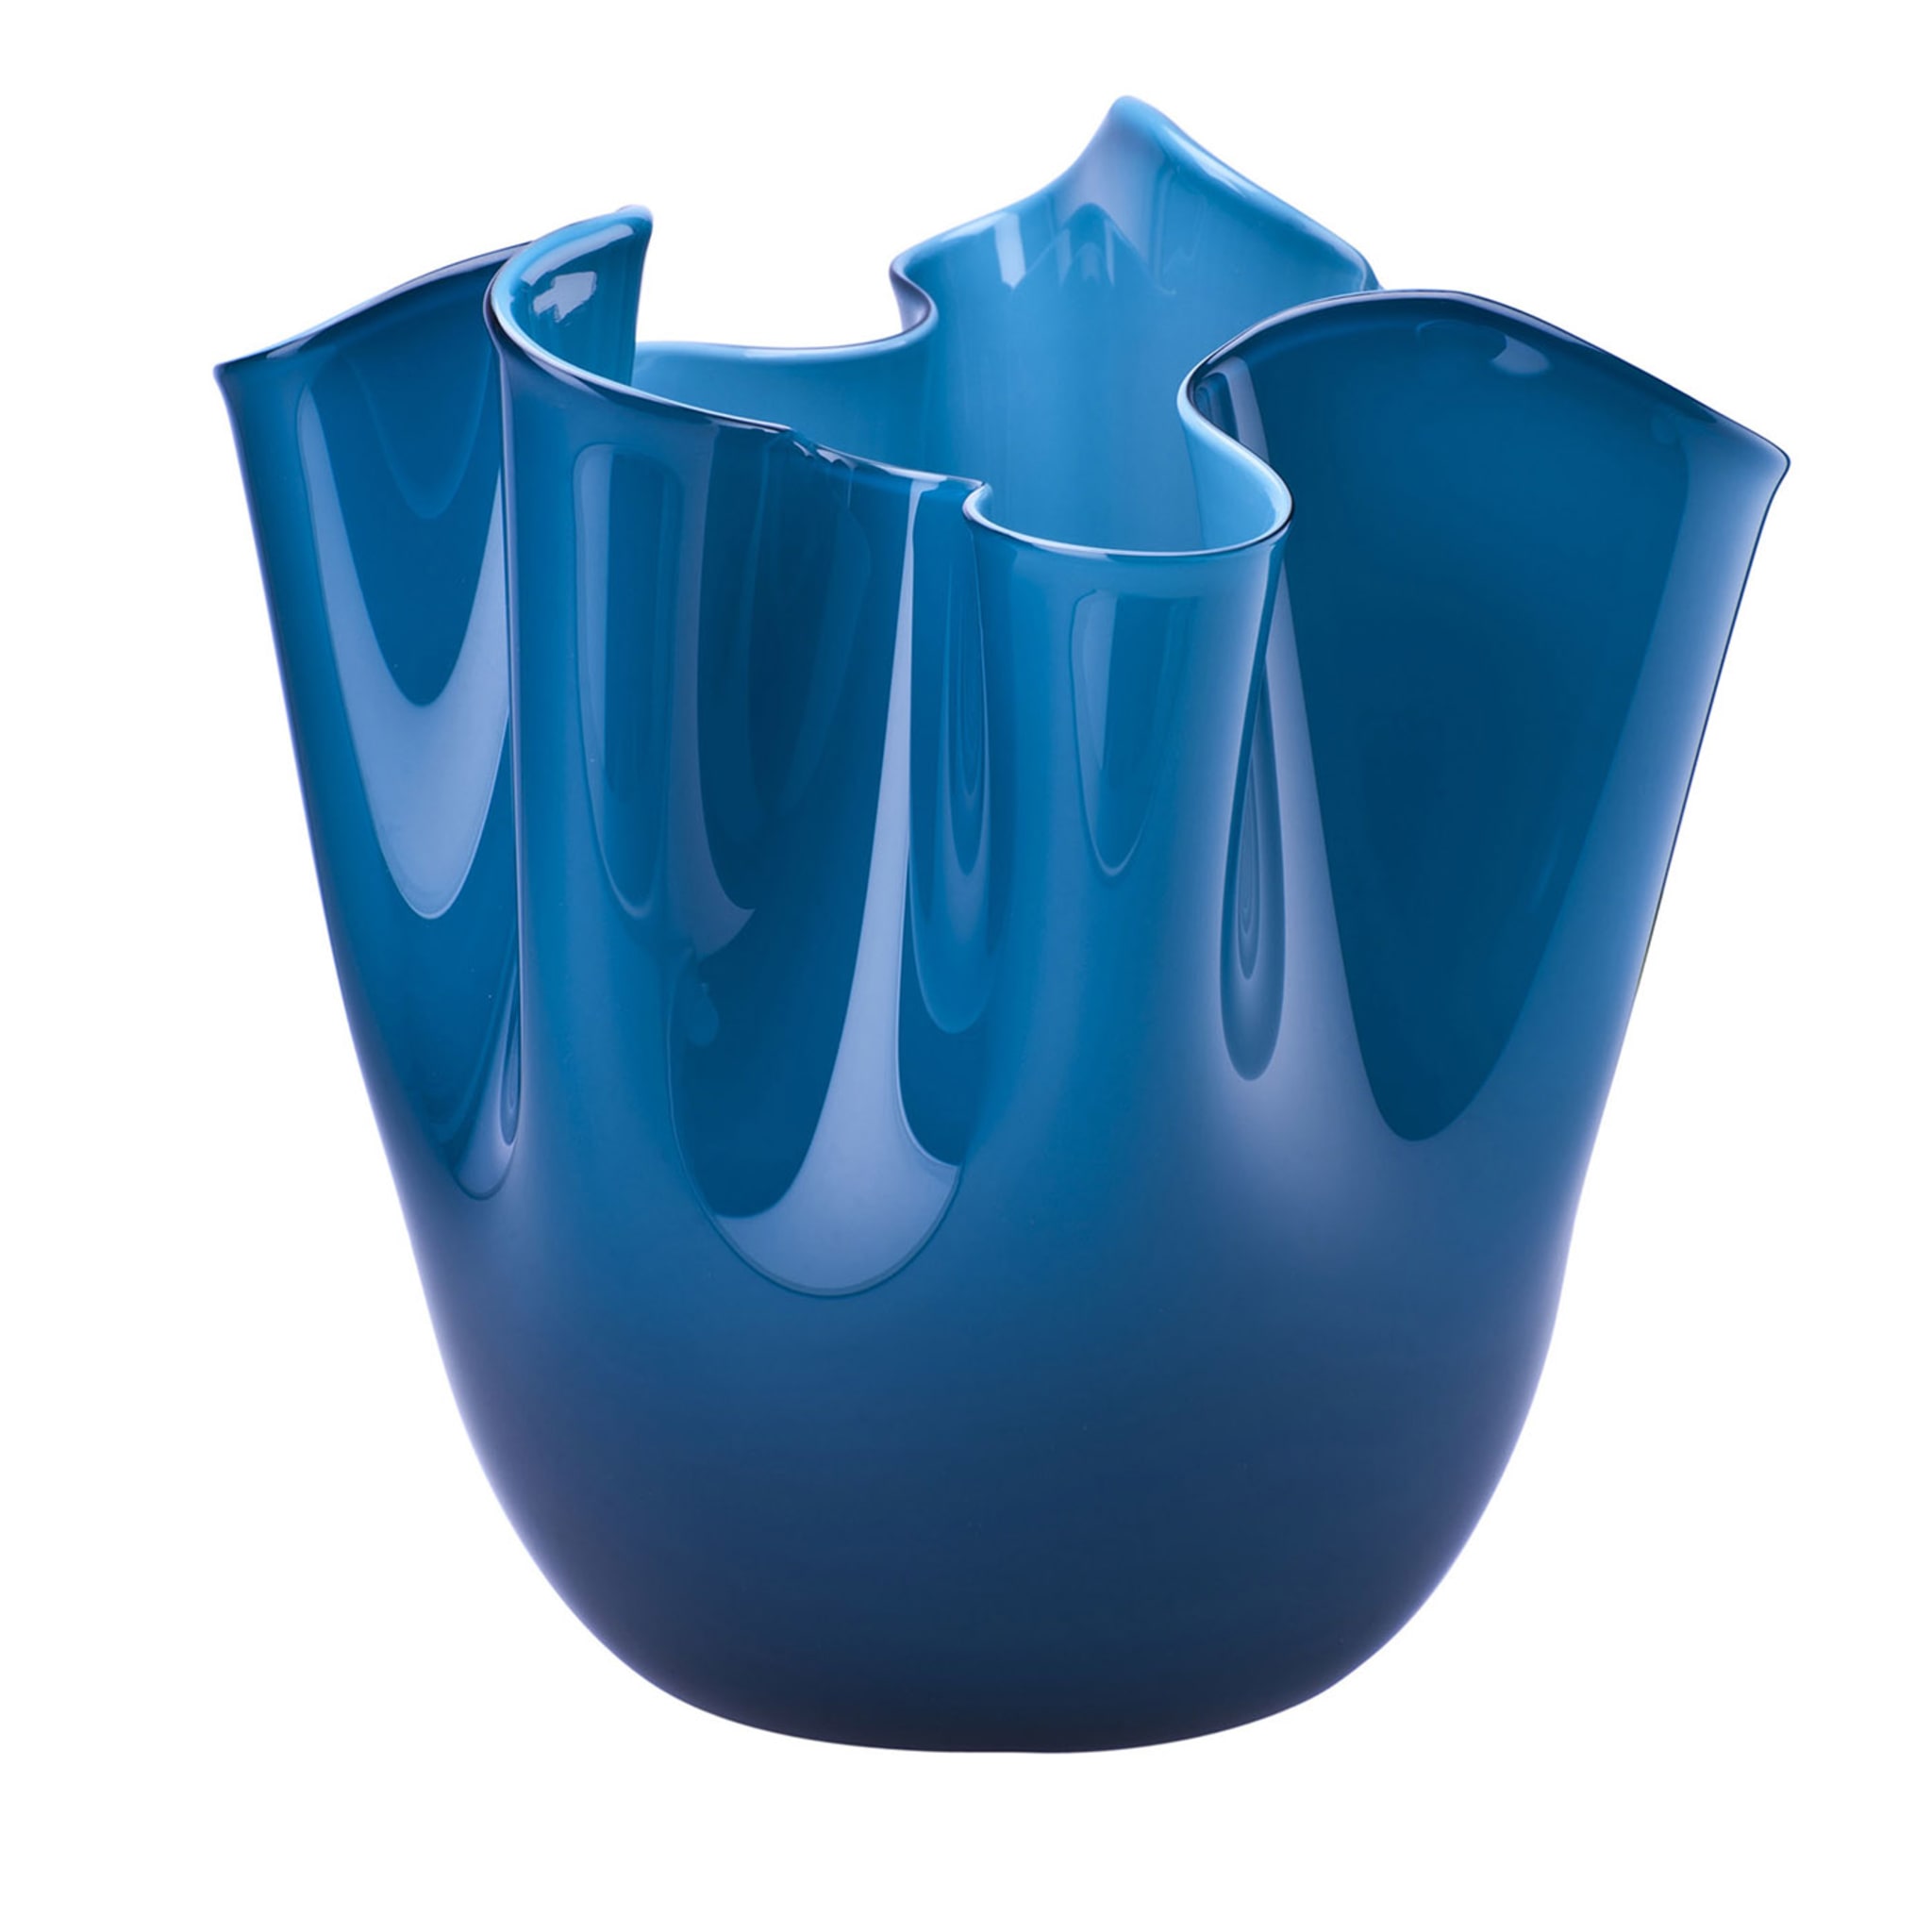 Fazzoletto Horizon Blue Vase by Paolo Venini and Fulvio Bianconi - Main view